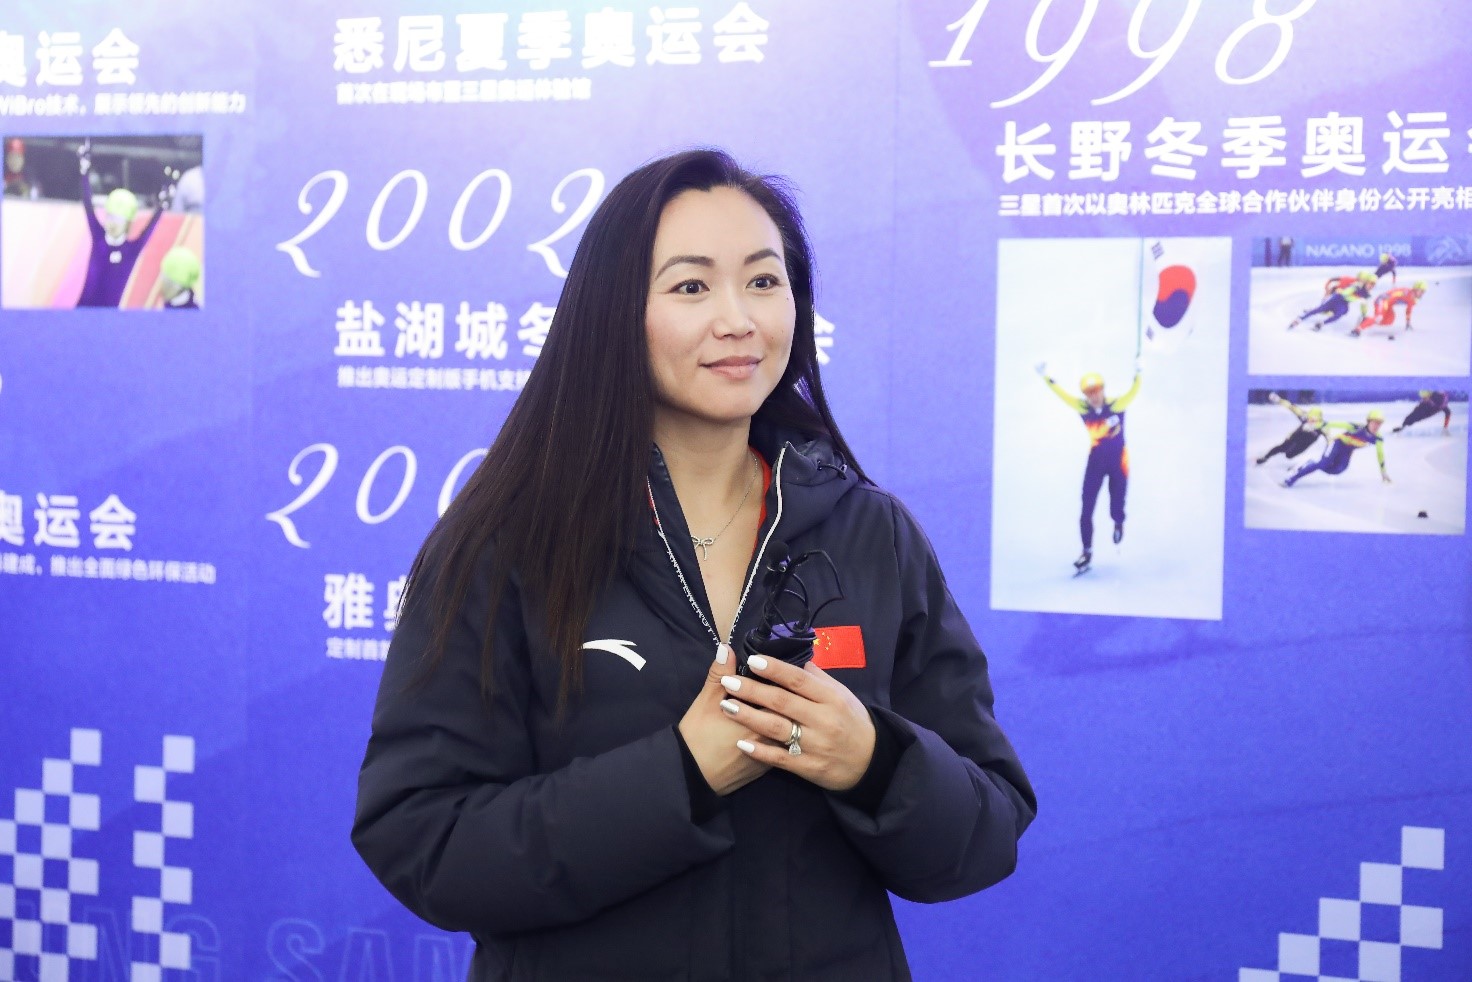 为北京冬奥献礼 2021“冰雪教室”预选赛正式开启